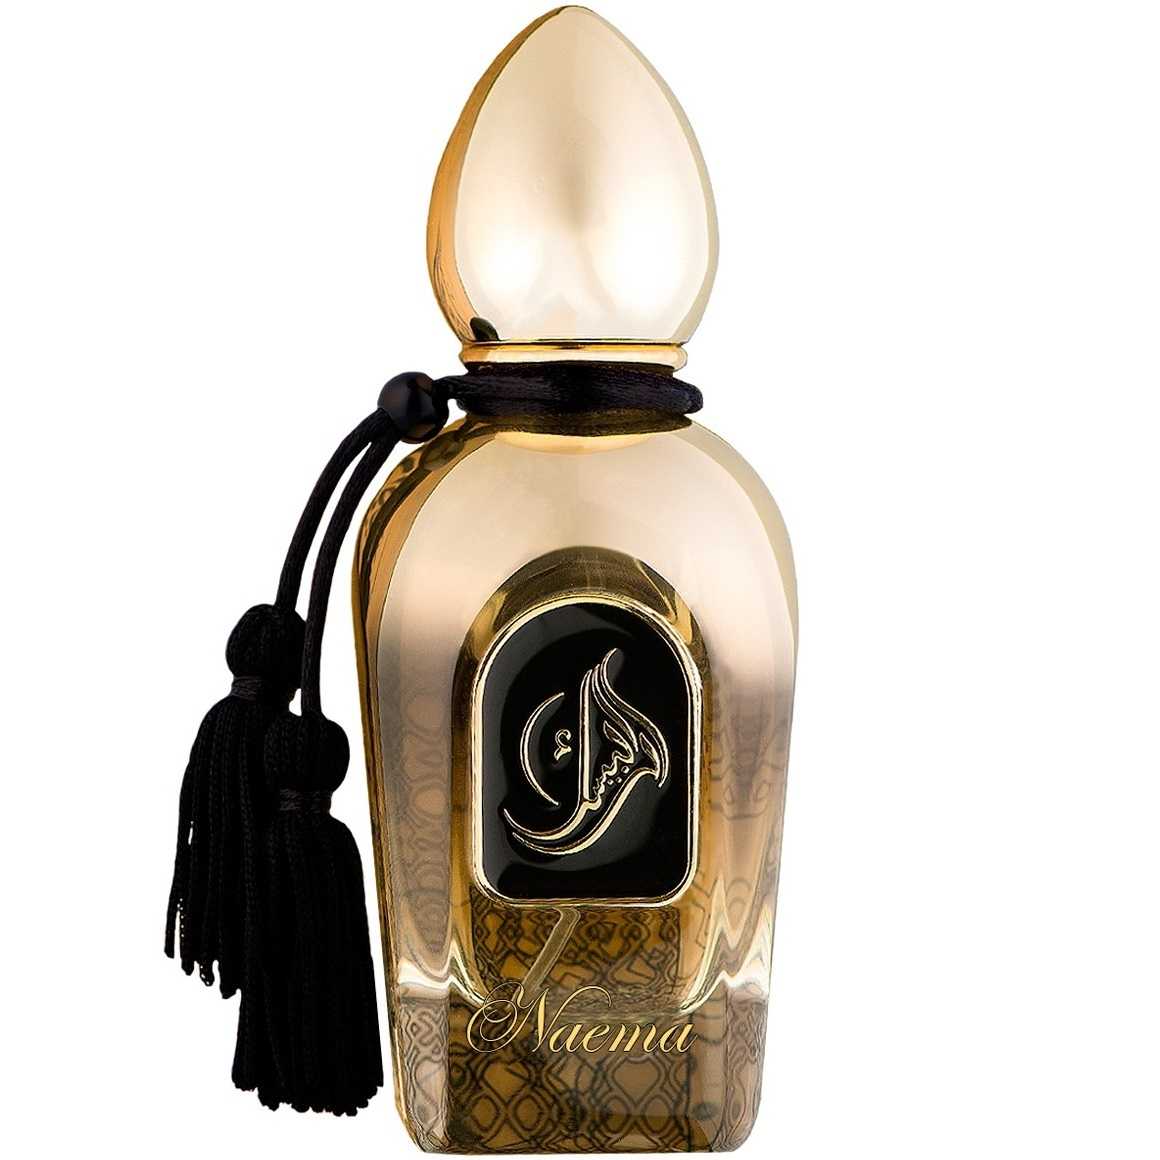 Классификация ароматов в парфюмерии